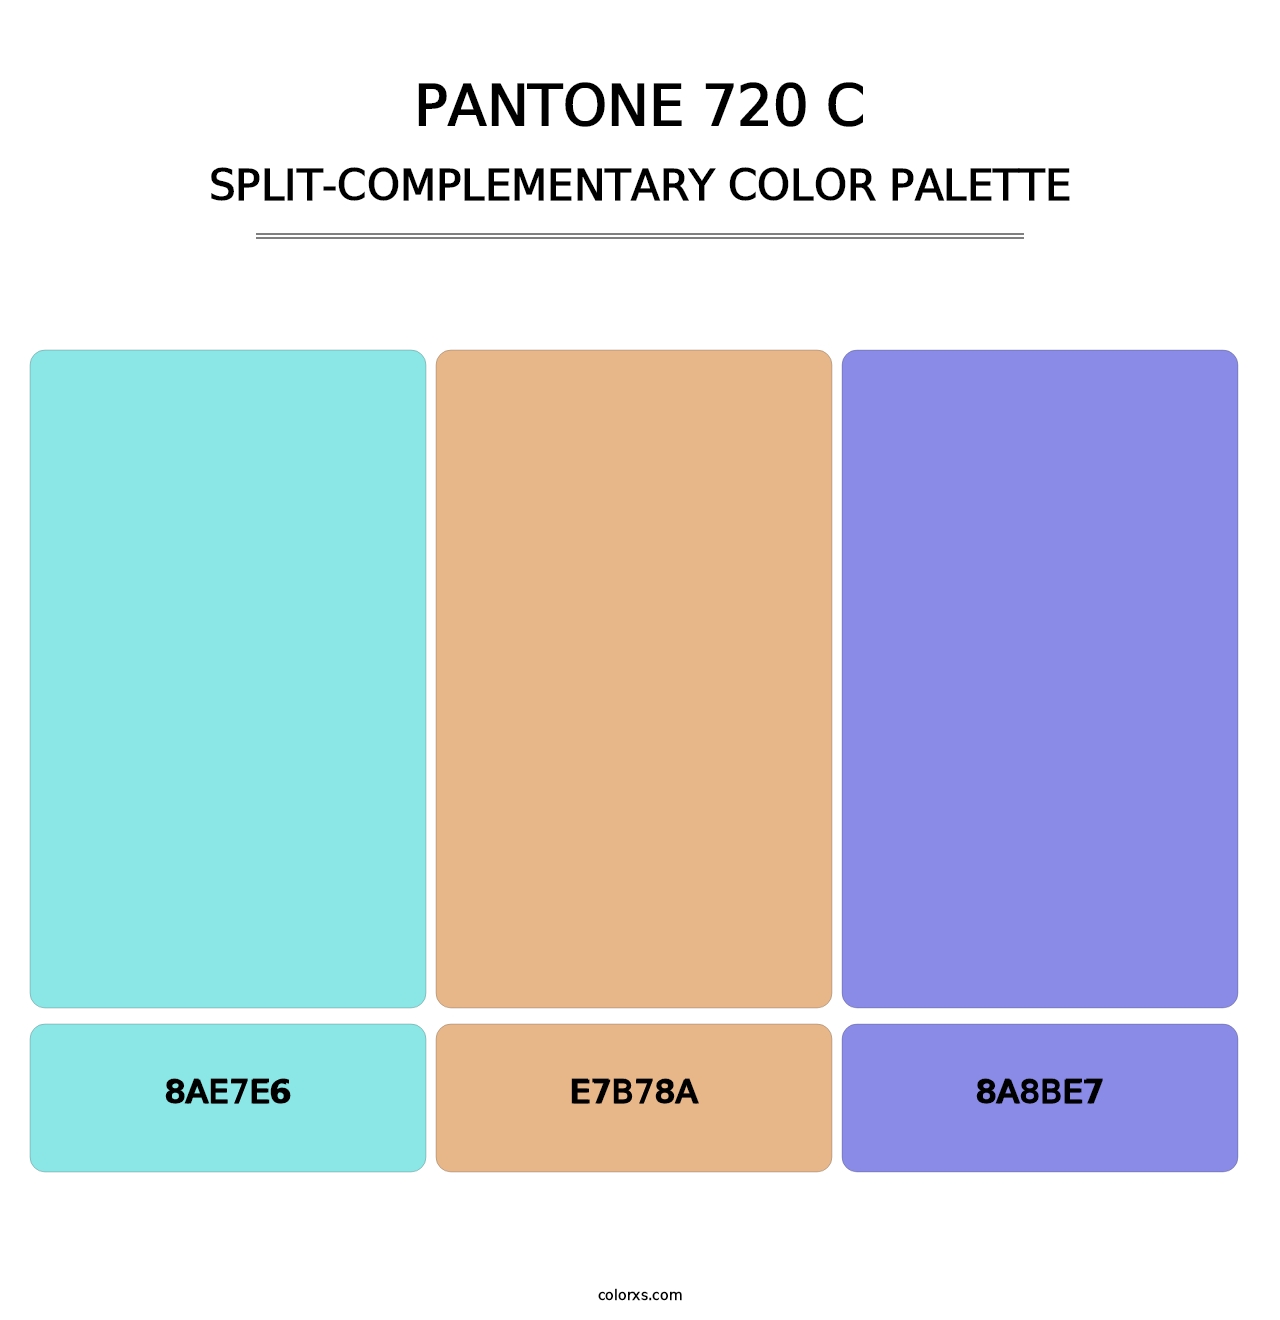 PANTONE 720 C - Split-Complementary Color Palette